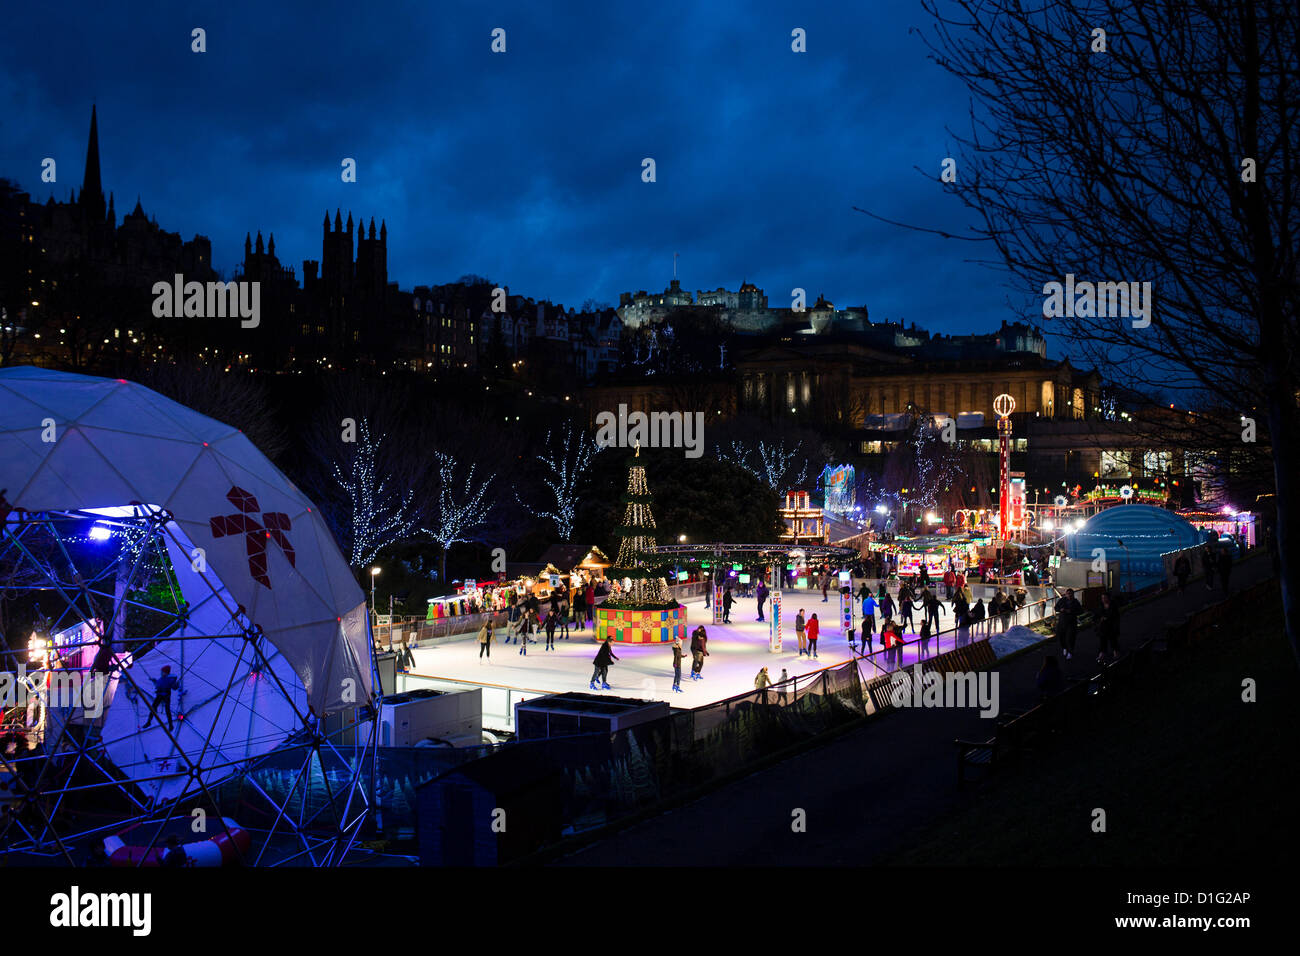 Edinburgh, UK. 19. Dezember 2012. Edinburgh-Weihnachten - freien Eislaufen in Princes Street Gardens, Edinburgh Castle beleuchtet darüber hinaus.  © David Kilpatrick / Alamy Live News Stockfoto